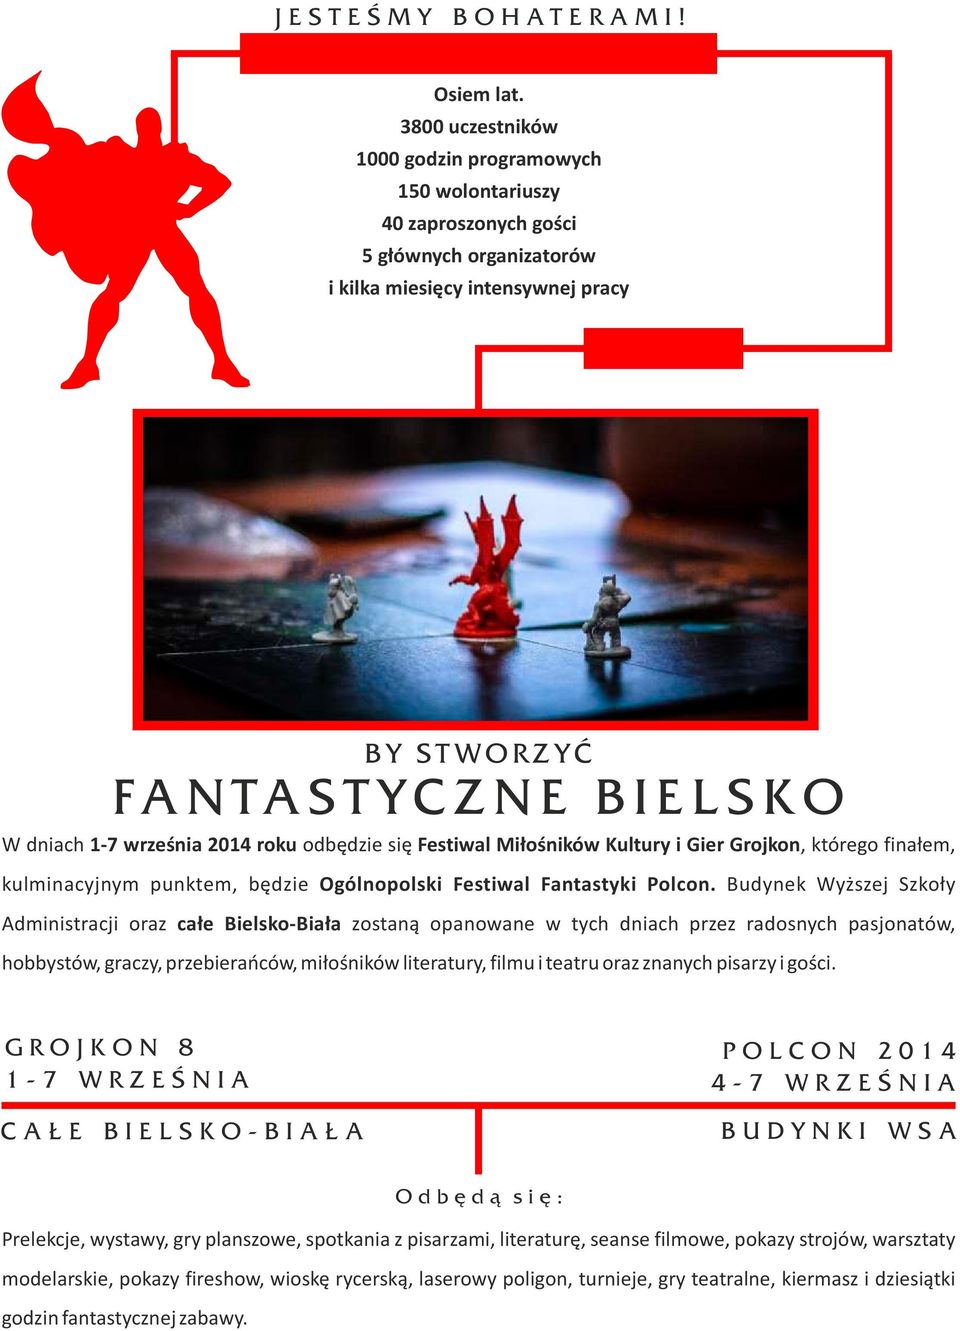 dniach 1-7 września 2014 roku odbędzie się Festiwal Miłośników Kultury i Gier Grojkon, którego finałem, kulminacyjnym punktem, będzie Ogólnopolski Festiwal Fantastyki Polcon.